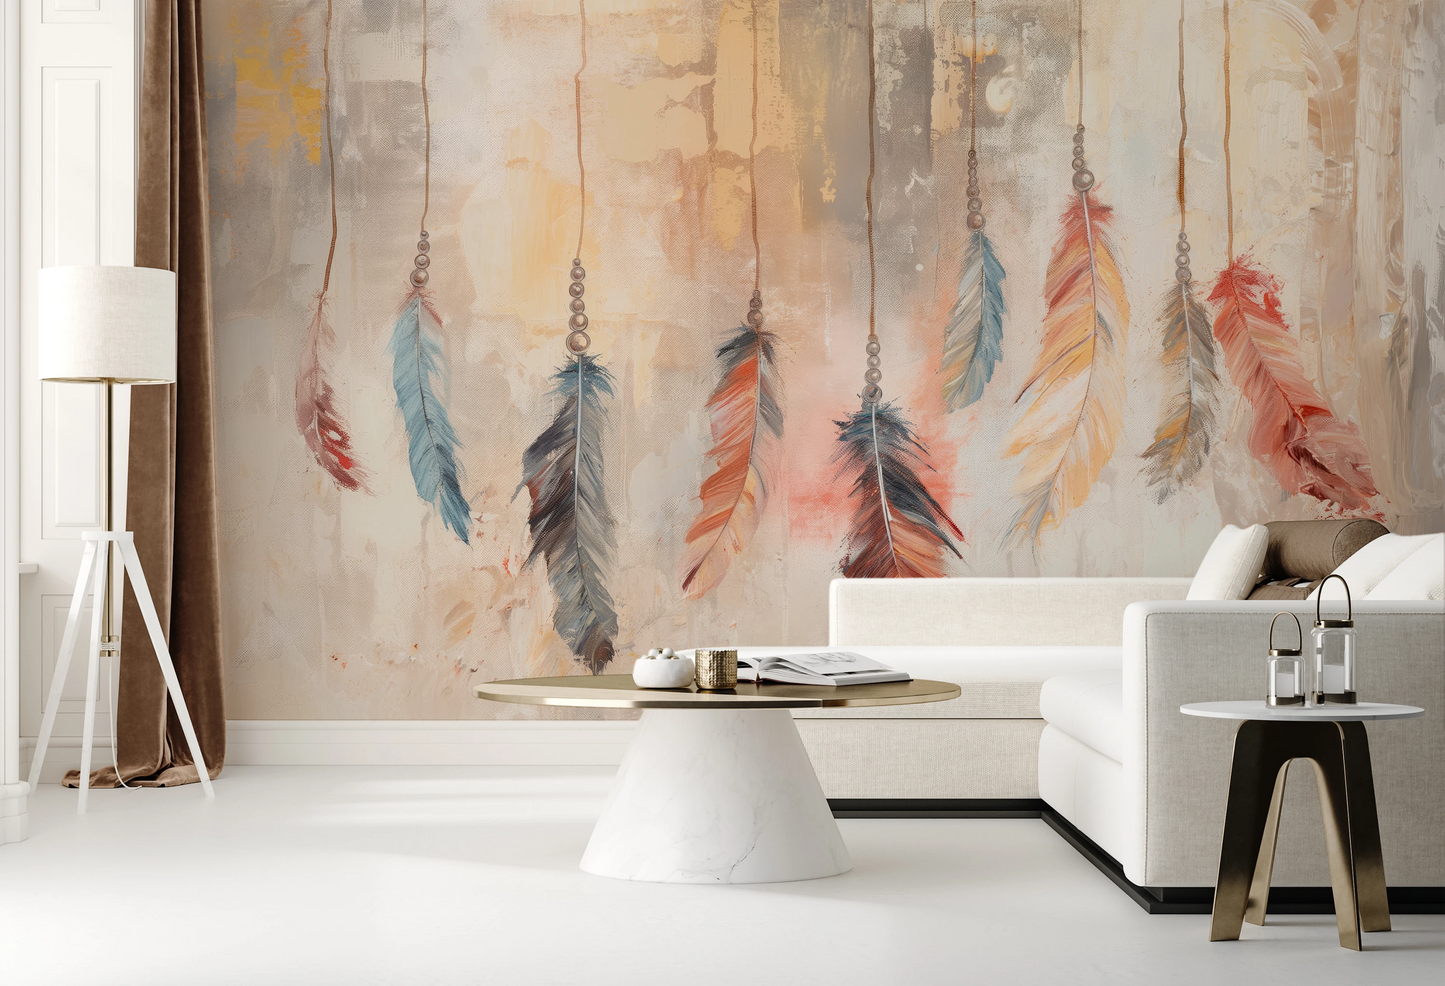 Fototapeta malowana o nazwie Abstract Feathers pokazana w aranżacji wnętrza.